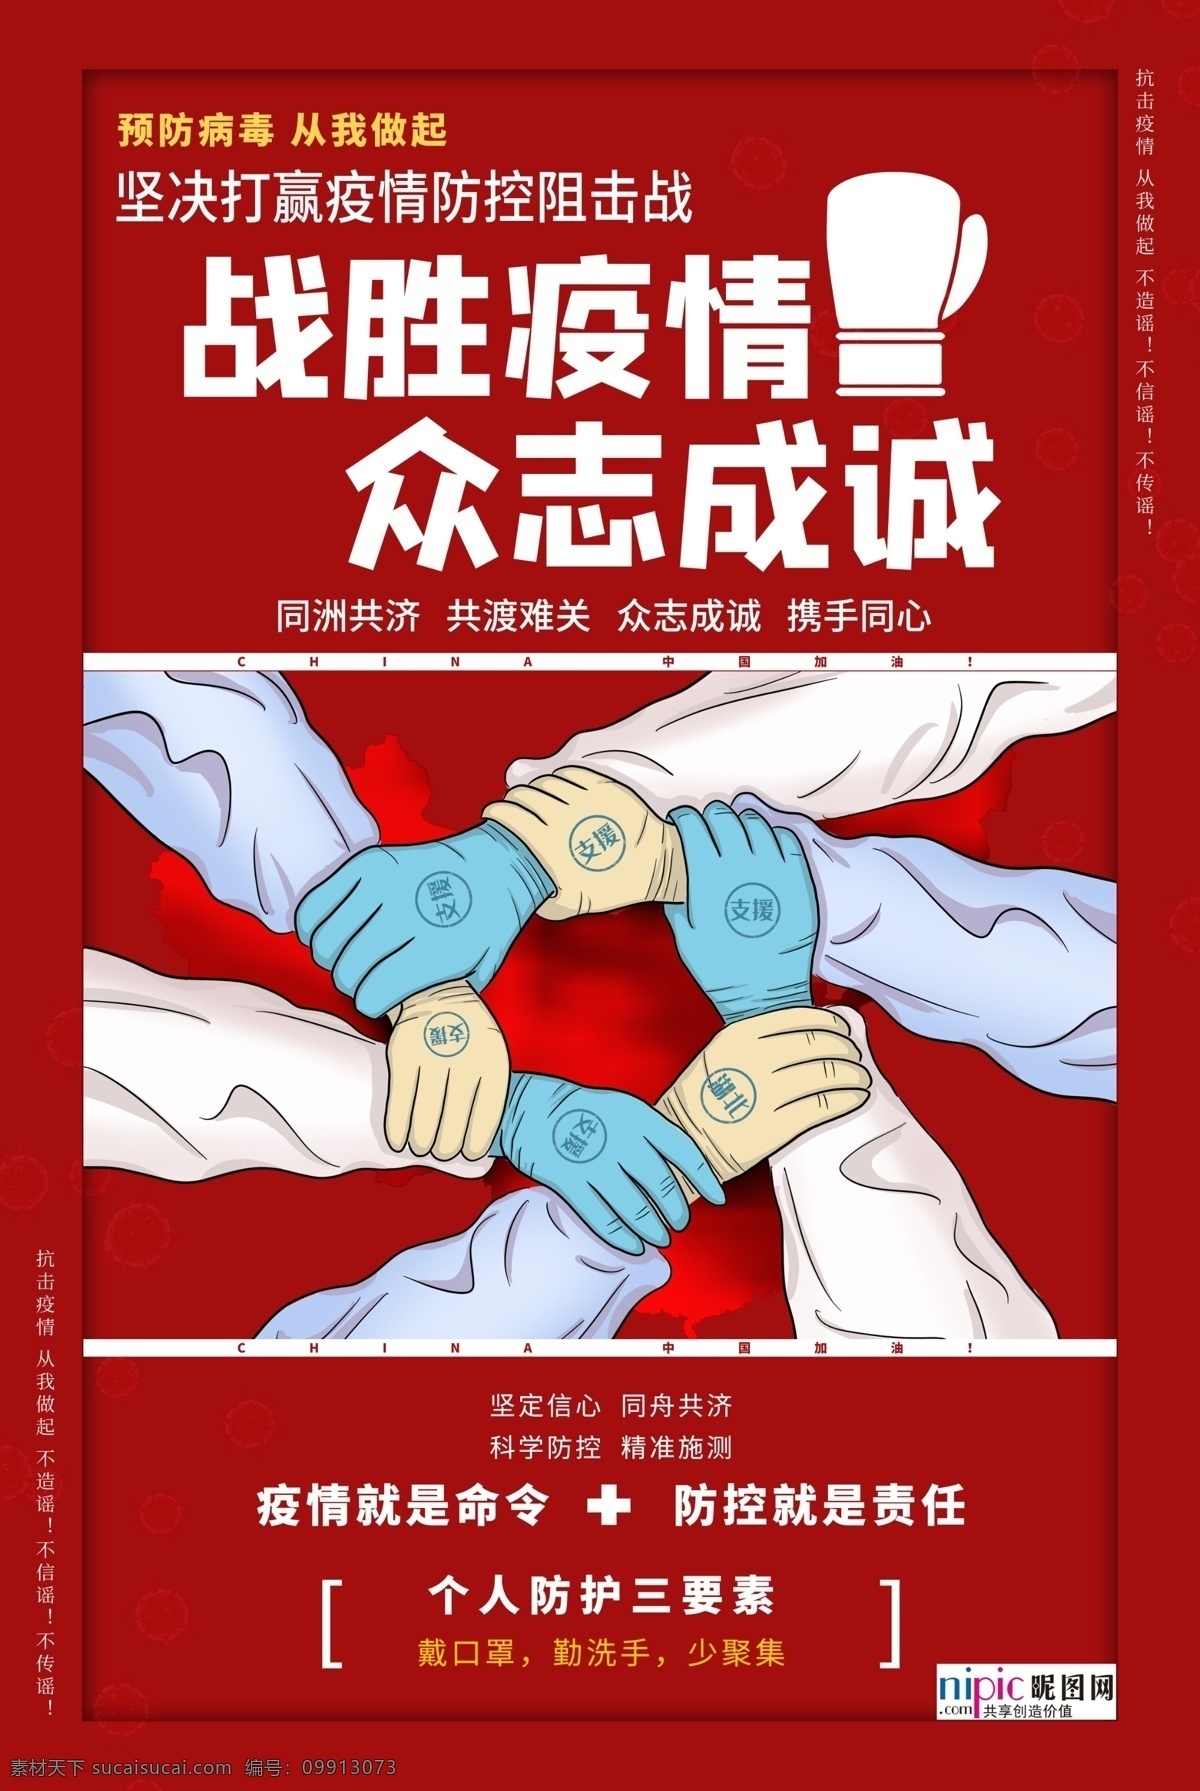 预防 武汉 冠状 肺炎 流感 病毒 海报 洗手 口罩 84消毒液 酒精 医院 护士 爱心 手套 体温 加油